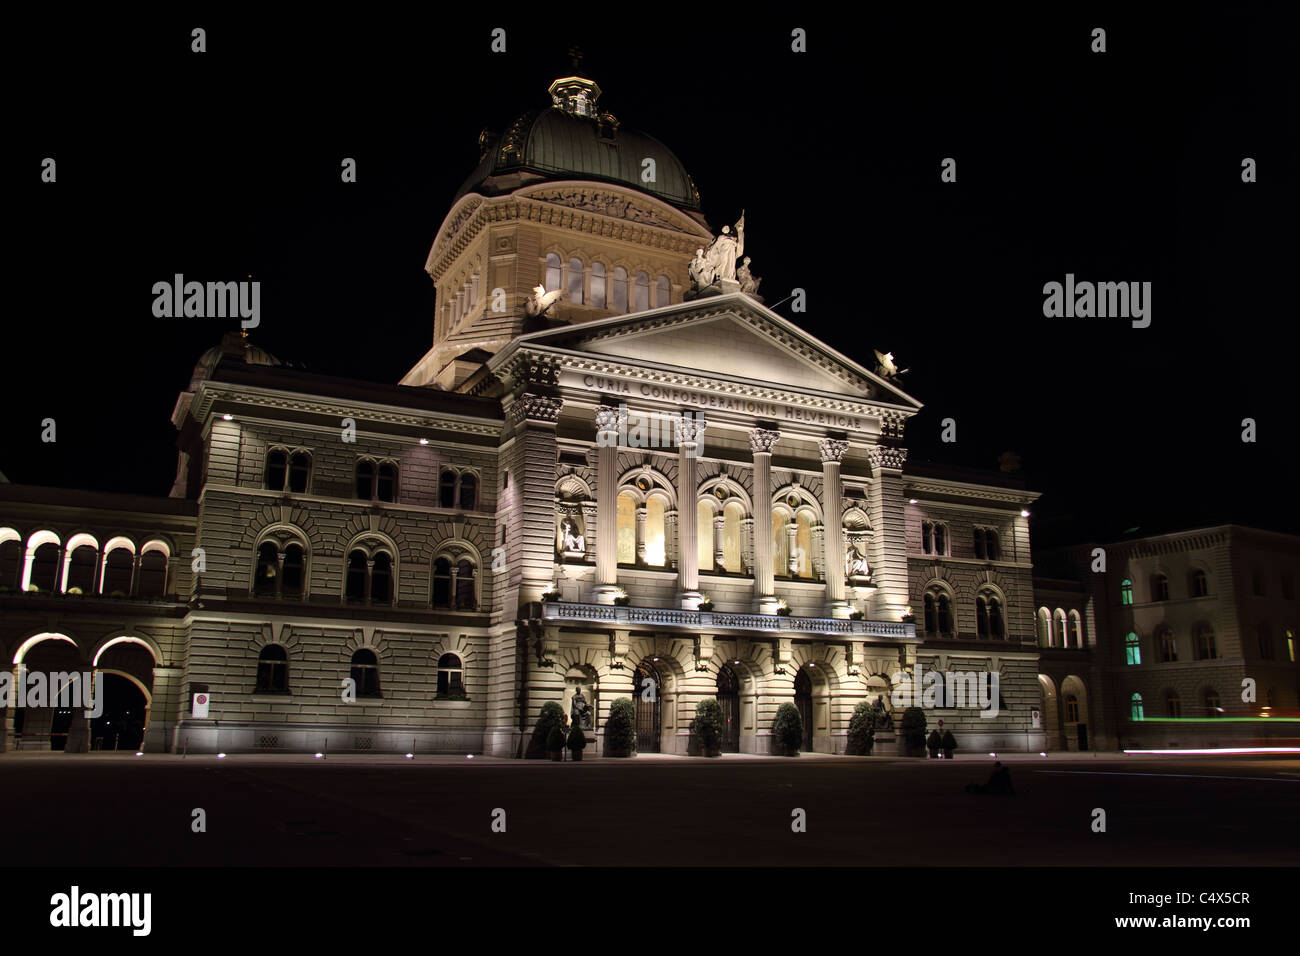 Berne, de style florentin, bâtiment du Parlement européen, la nuit Bundeshaus Bundesplatz @ Banque D'Images